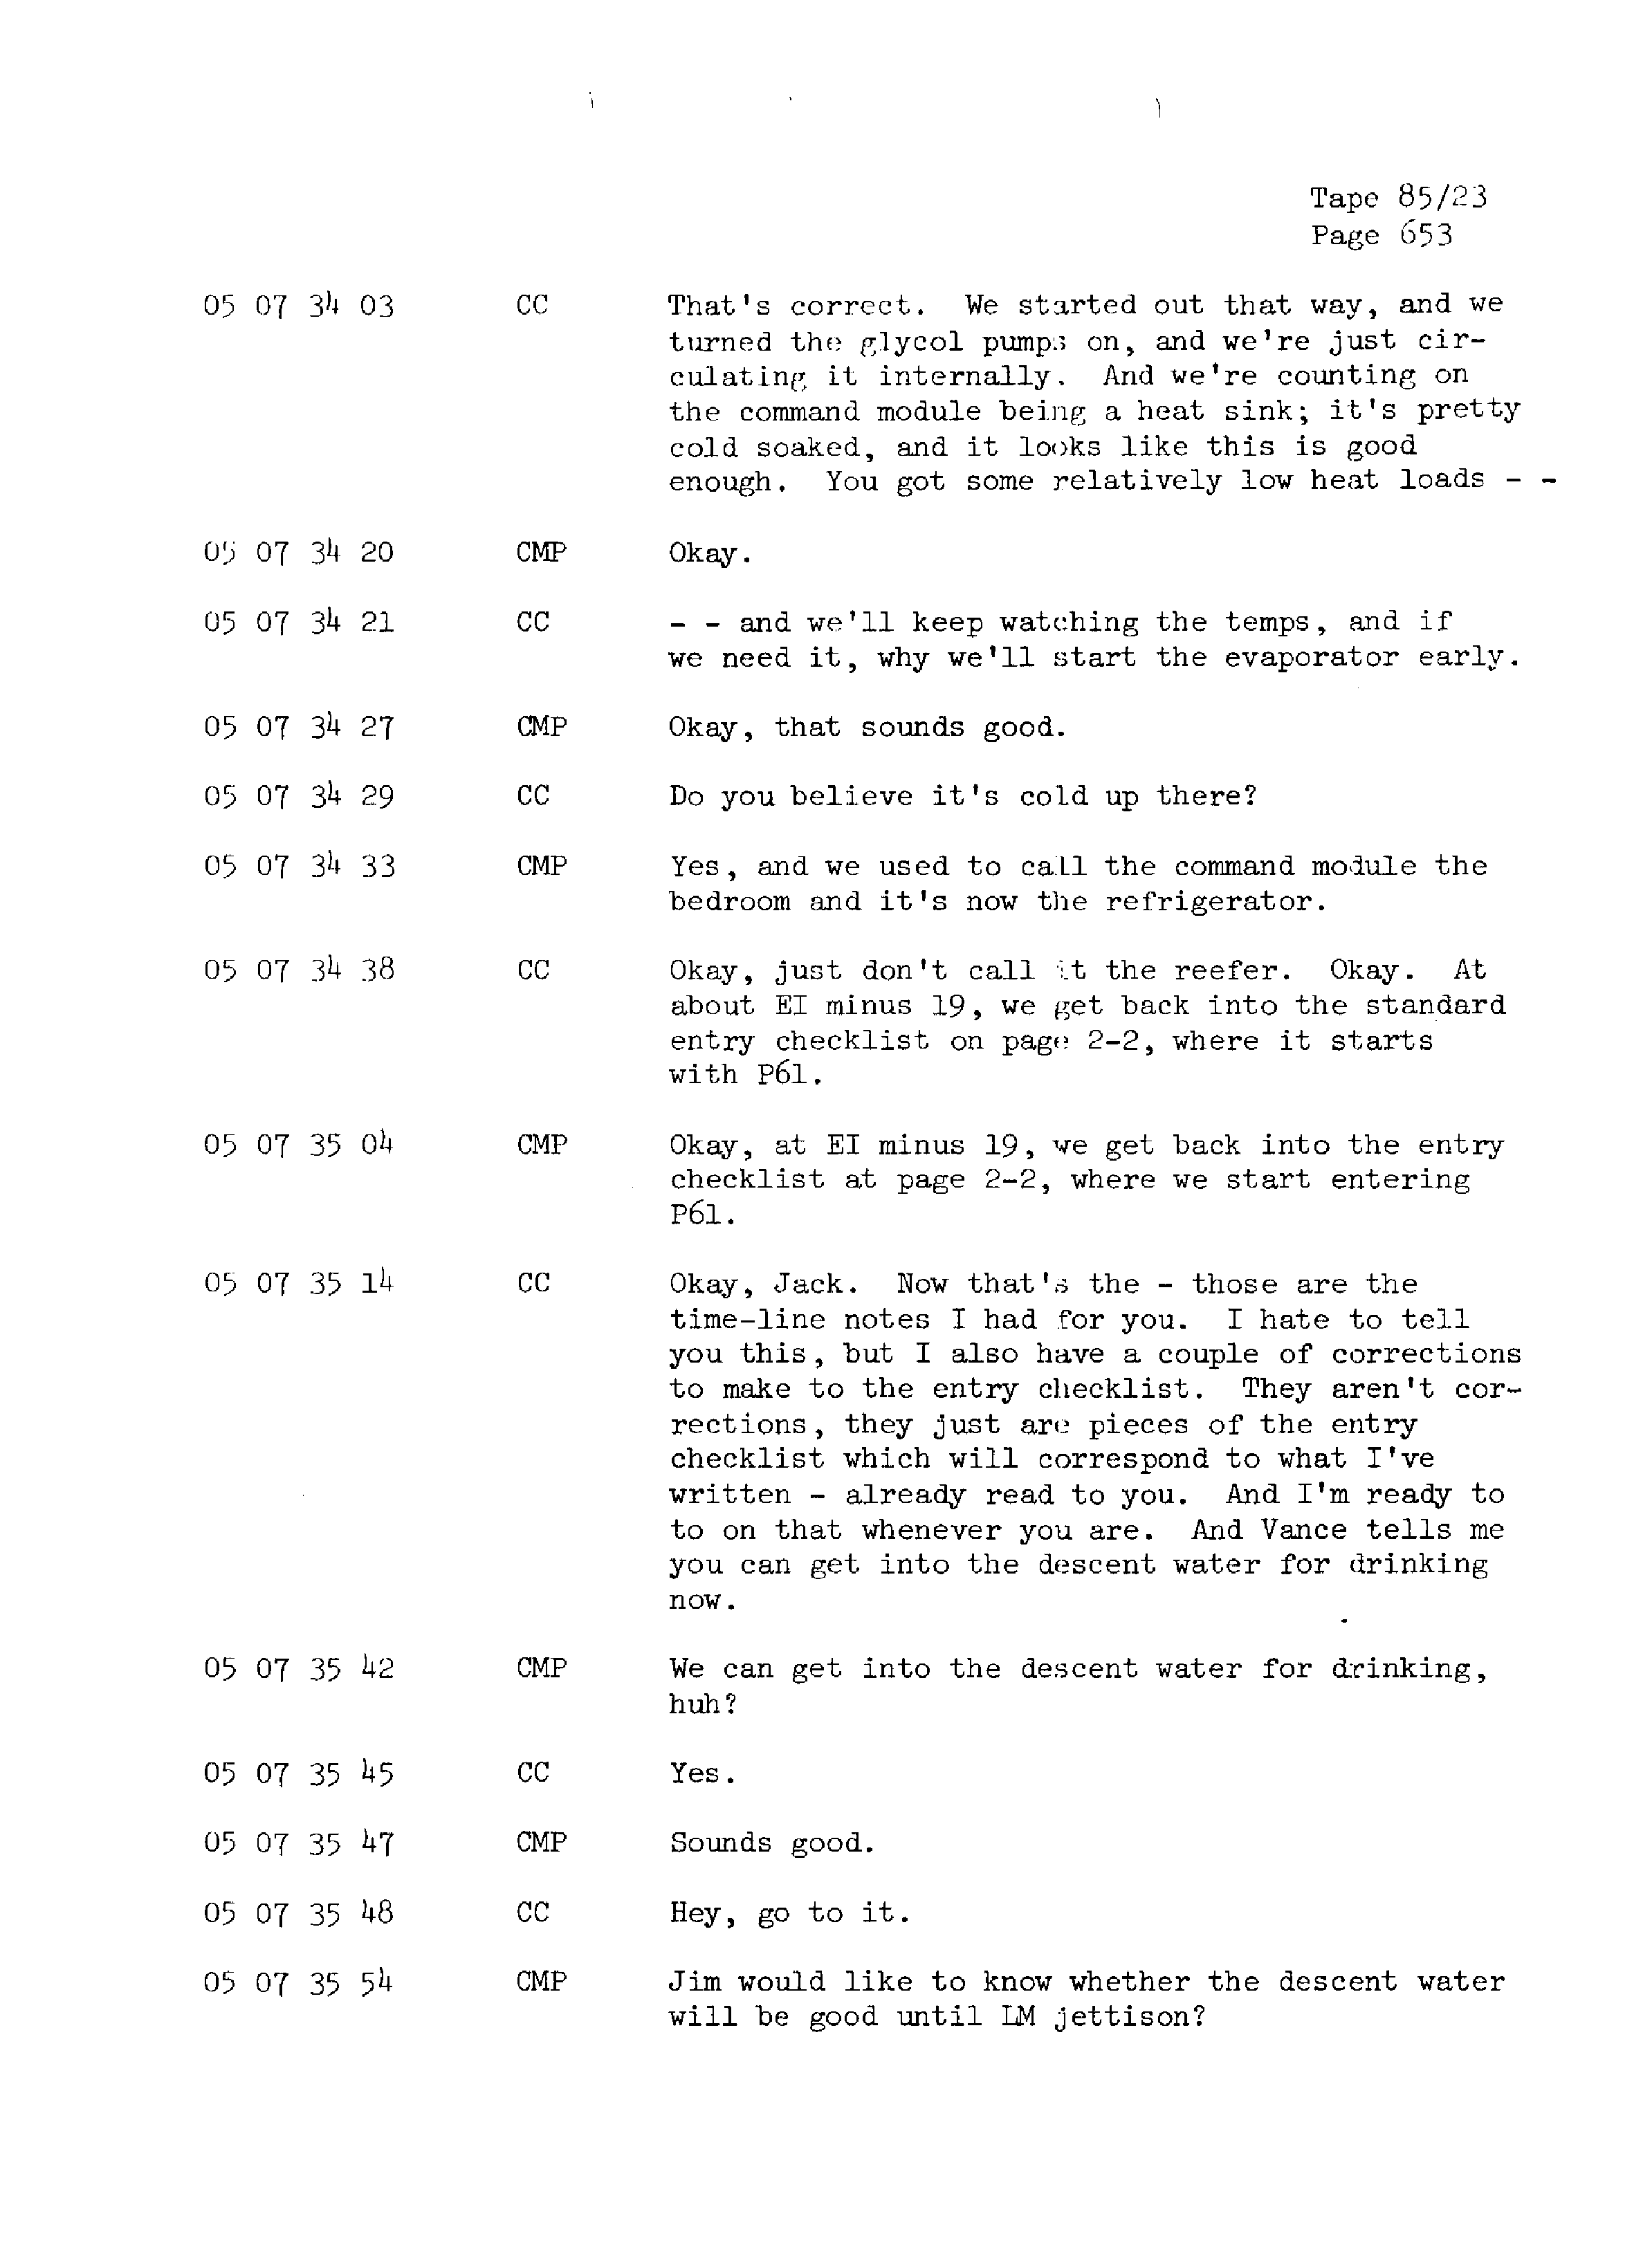 Page 660 of Apollo 13’s original transcript